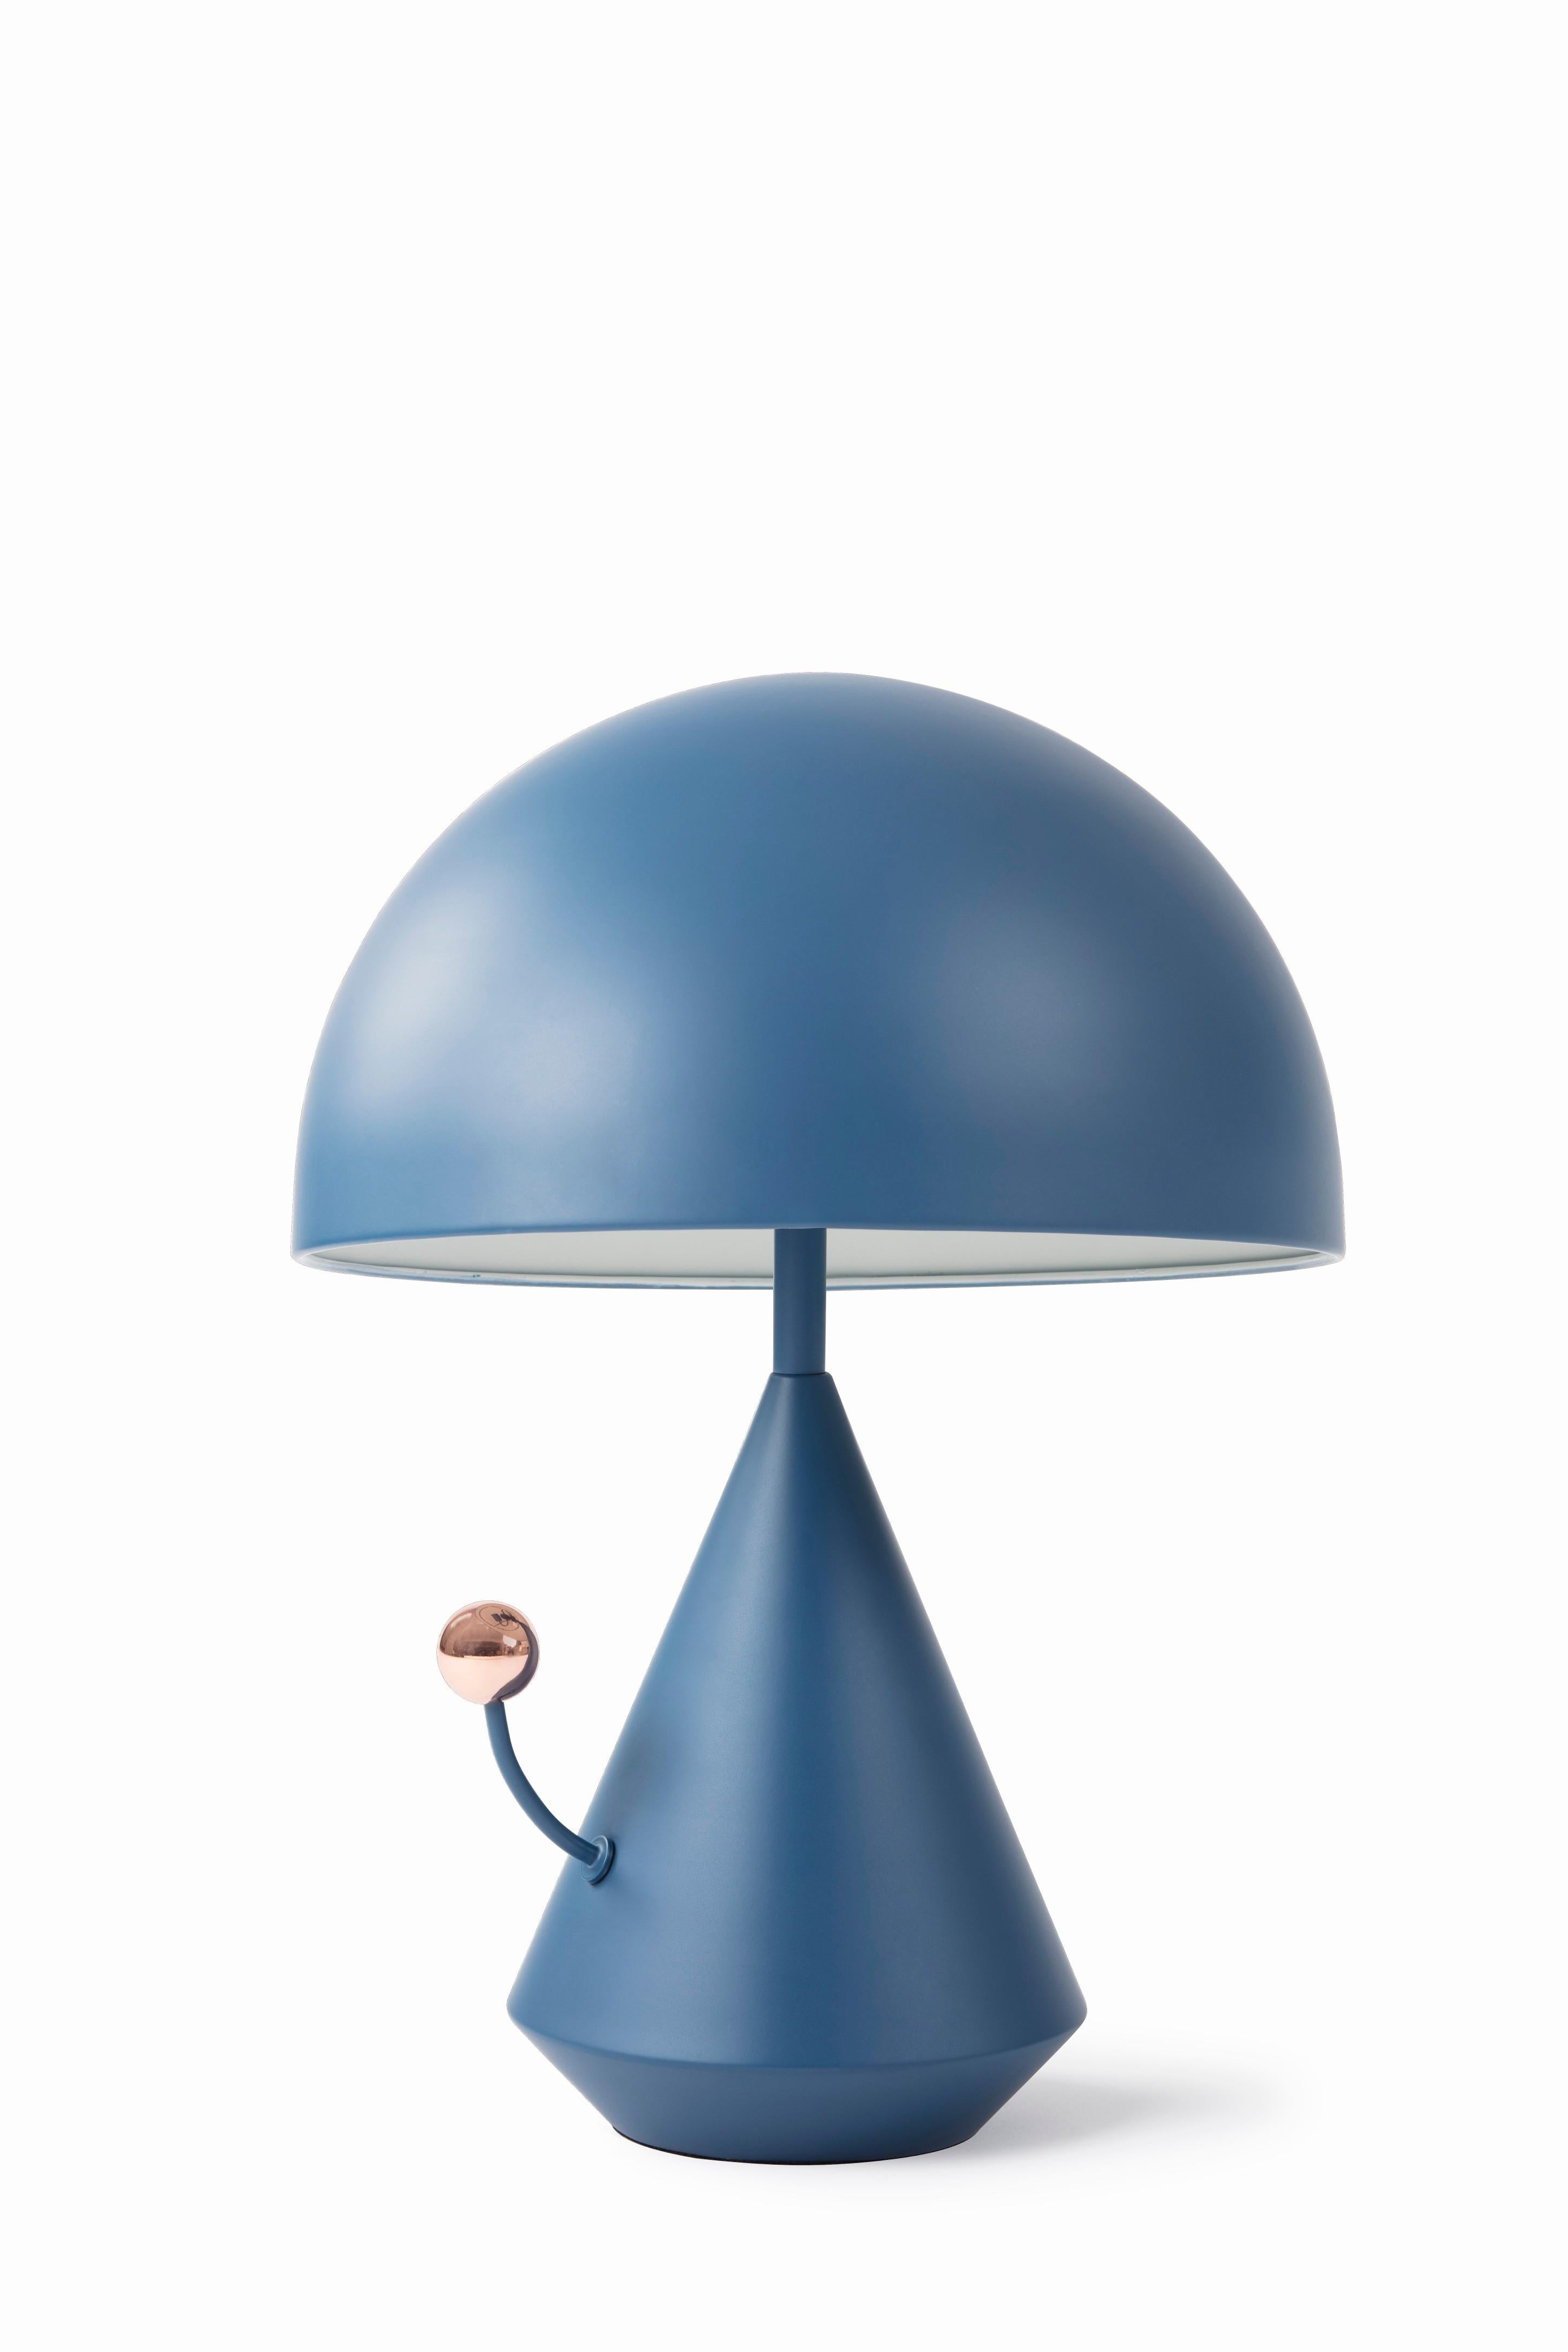 Metal Dali Surrealistic Table Lamp by Thomas Dariel